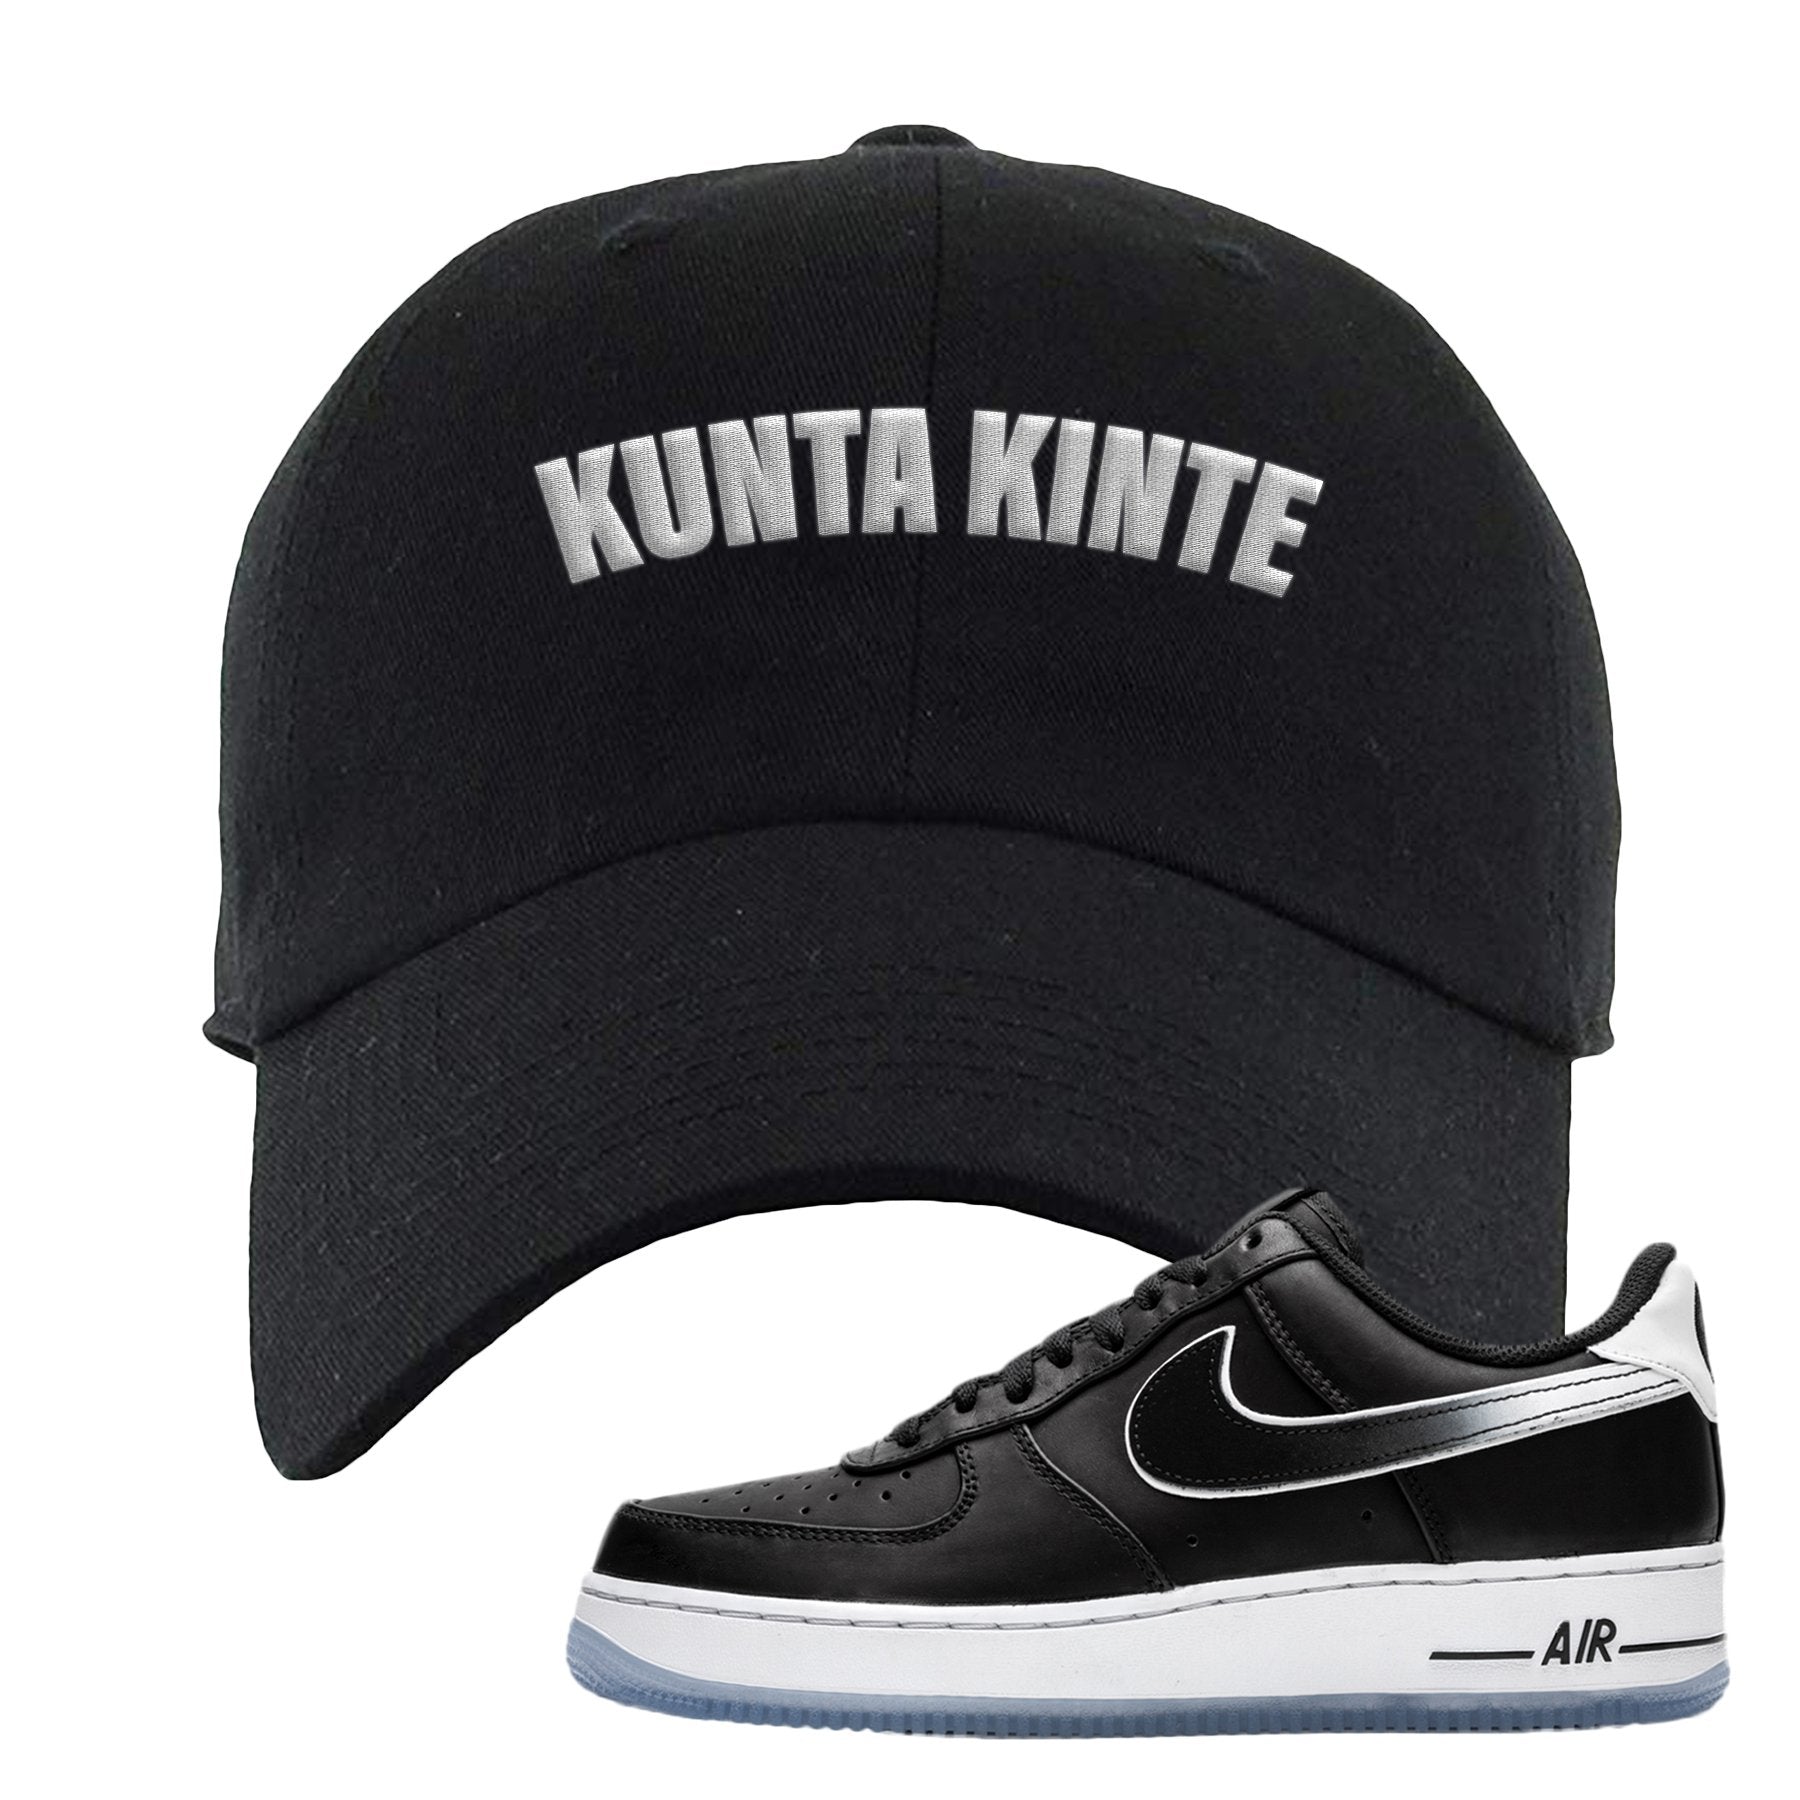 Colin Kaepernick X Air Force 1 Low Kunta Kinte Black Sneaker Hook Up Dad Hat